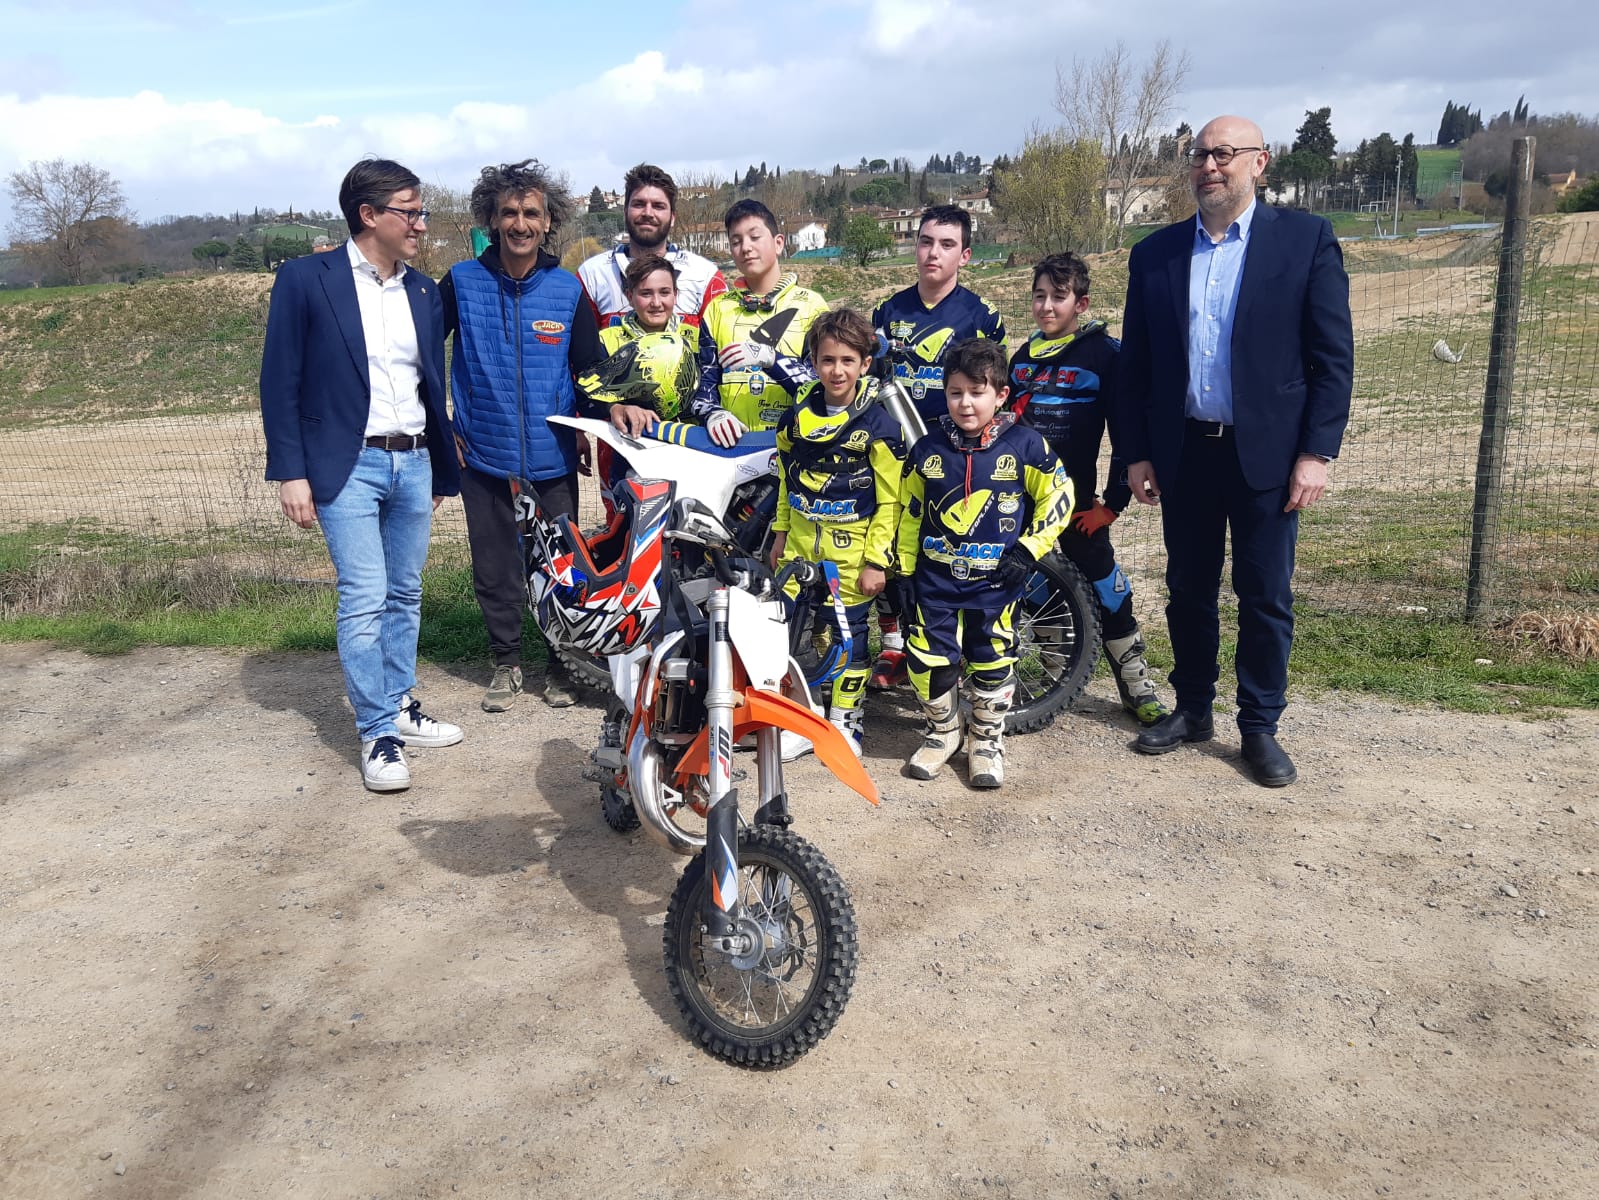 Visita di Nardella e Fallani al Motocross Team 'Dr. Jack'